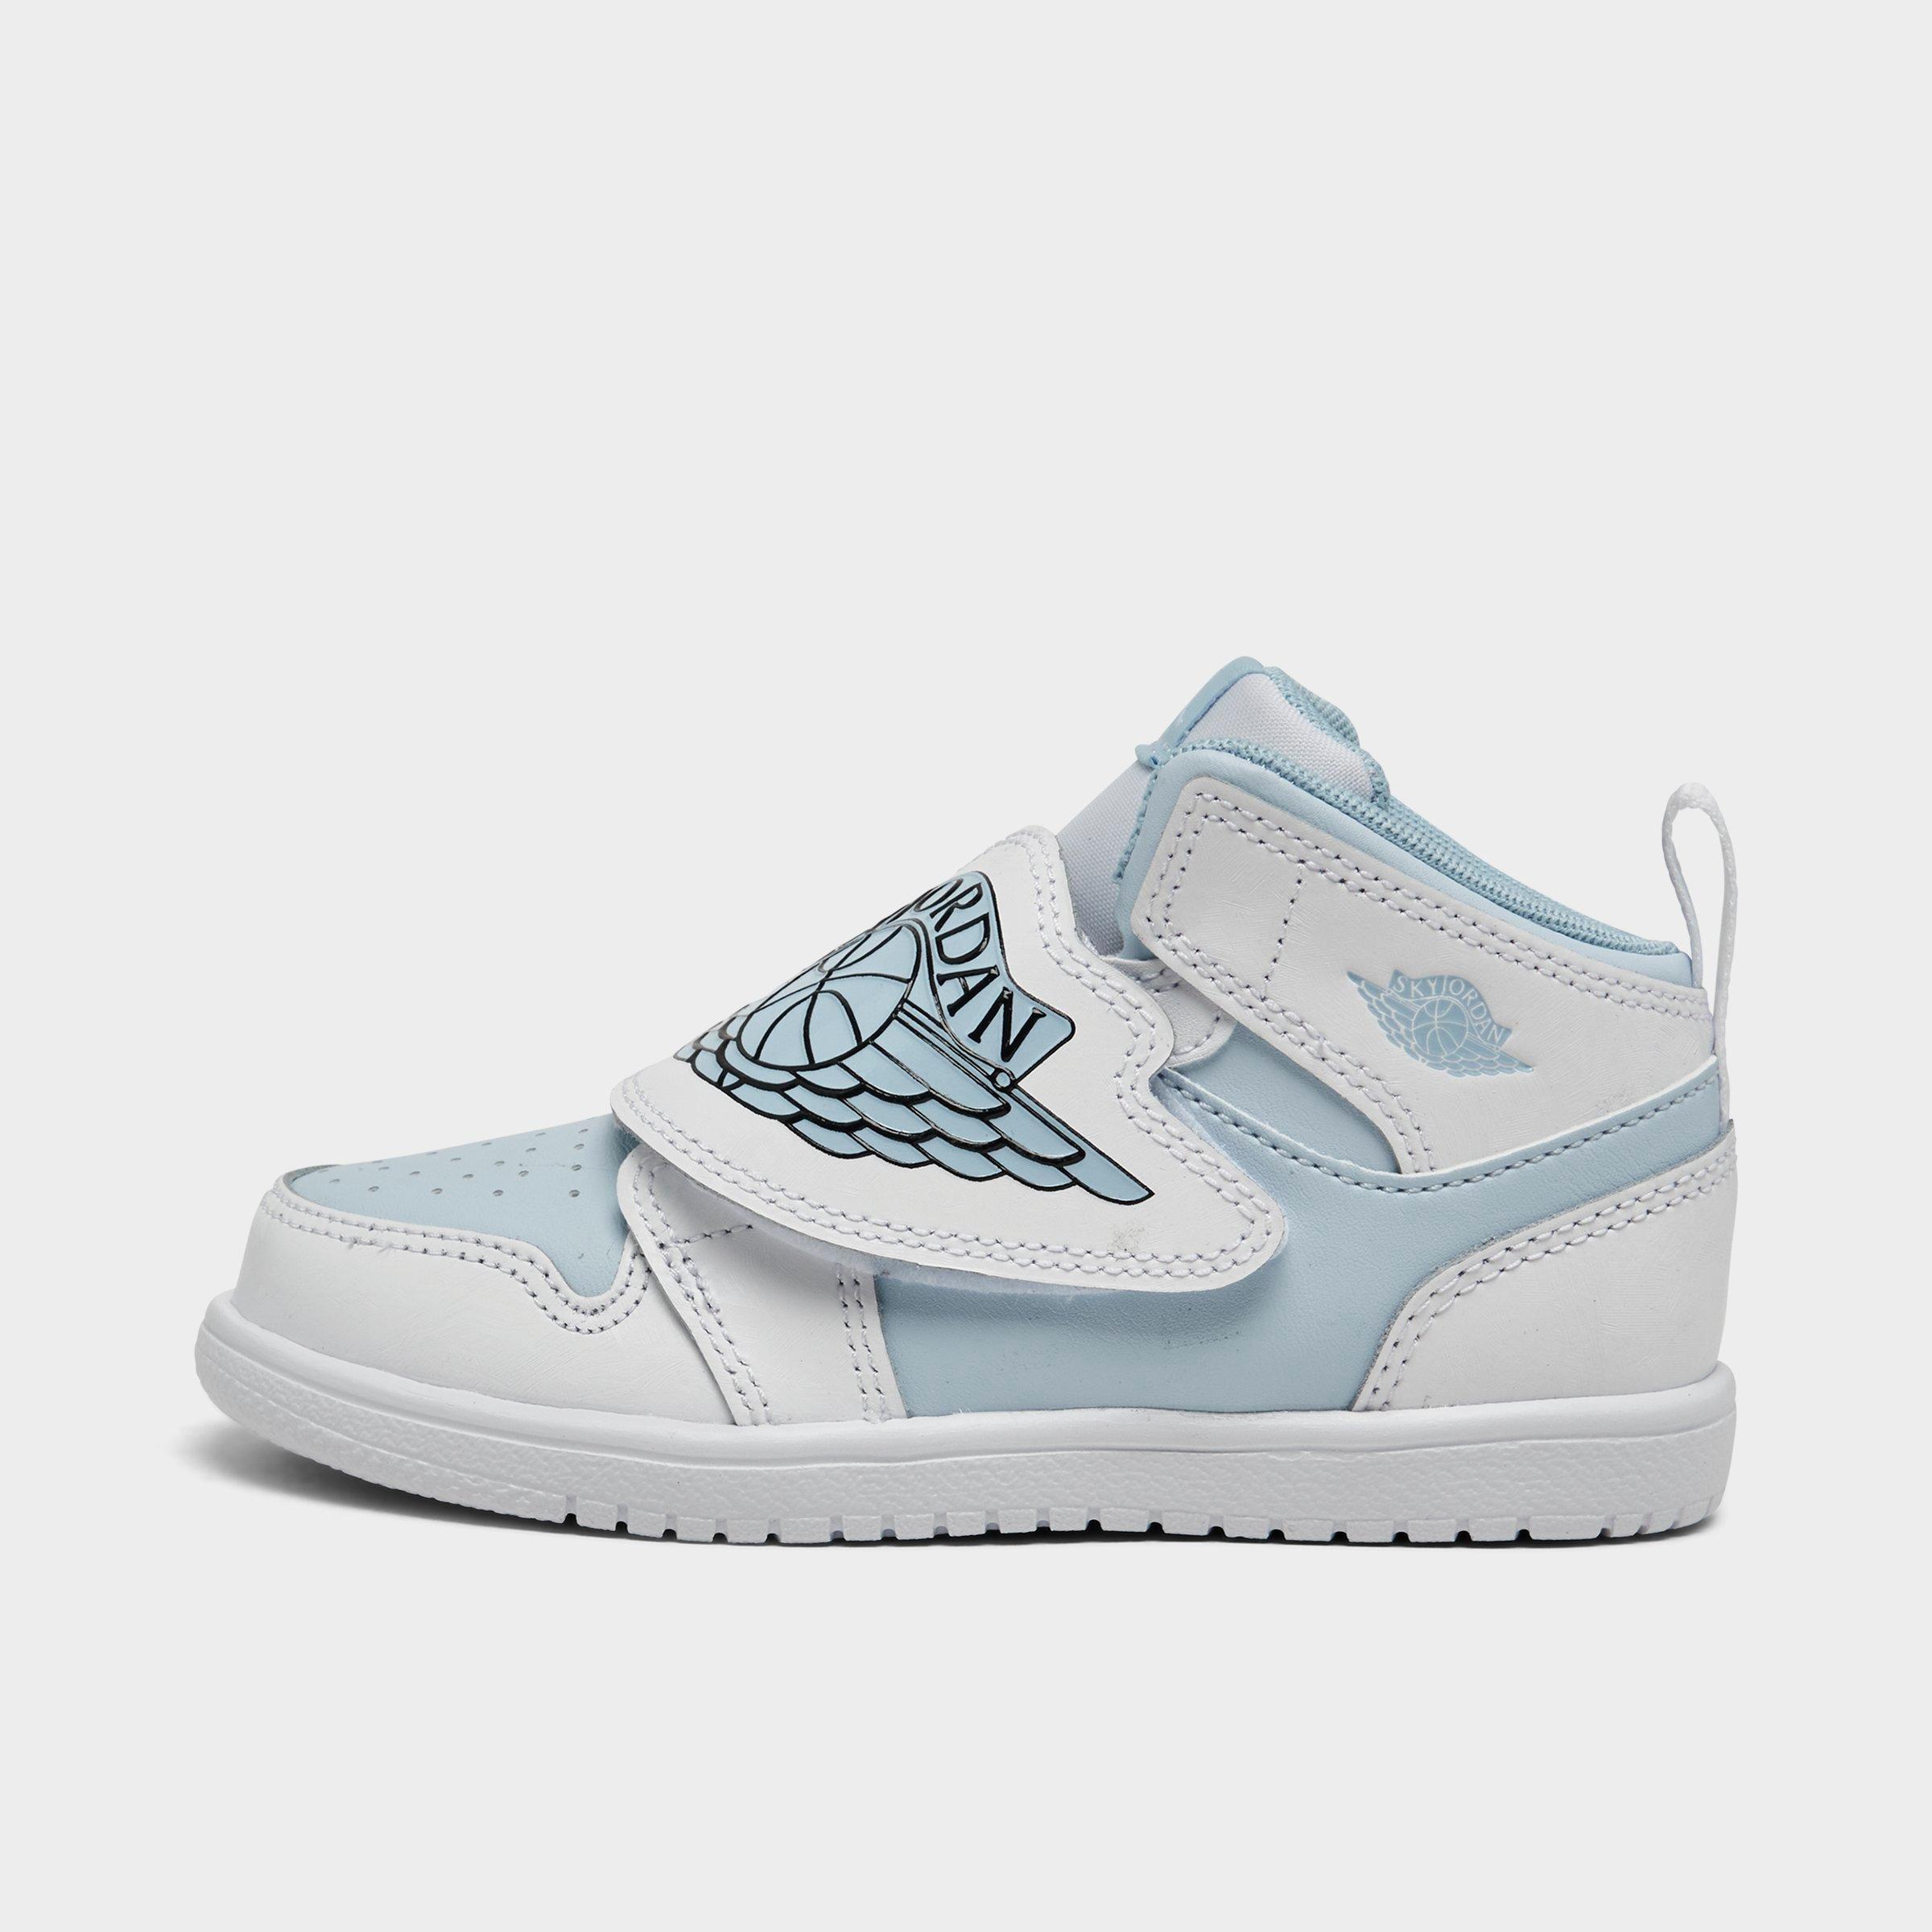 Nike Babies' Girls' Toddler Air Jordan Sky Jordan 1 Casual Shoes In Blue Tint/white/ice Blue